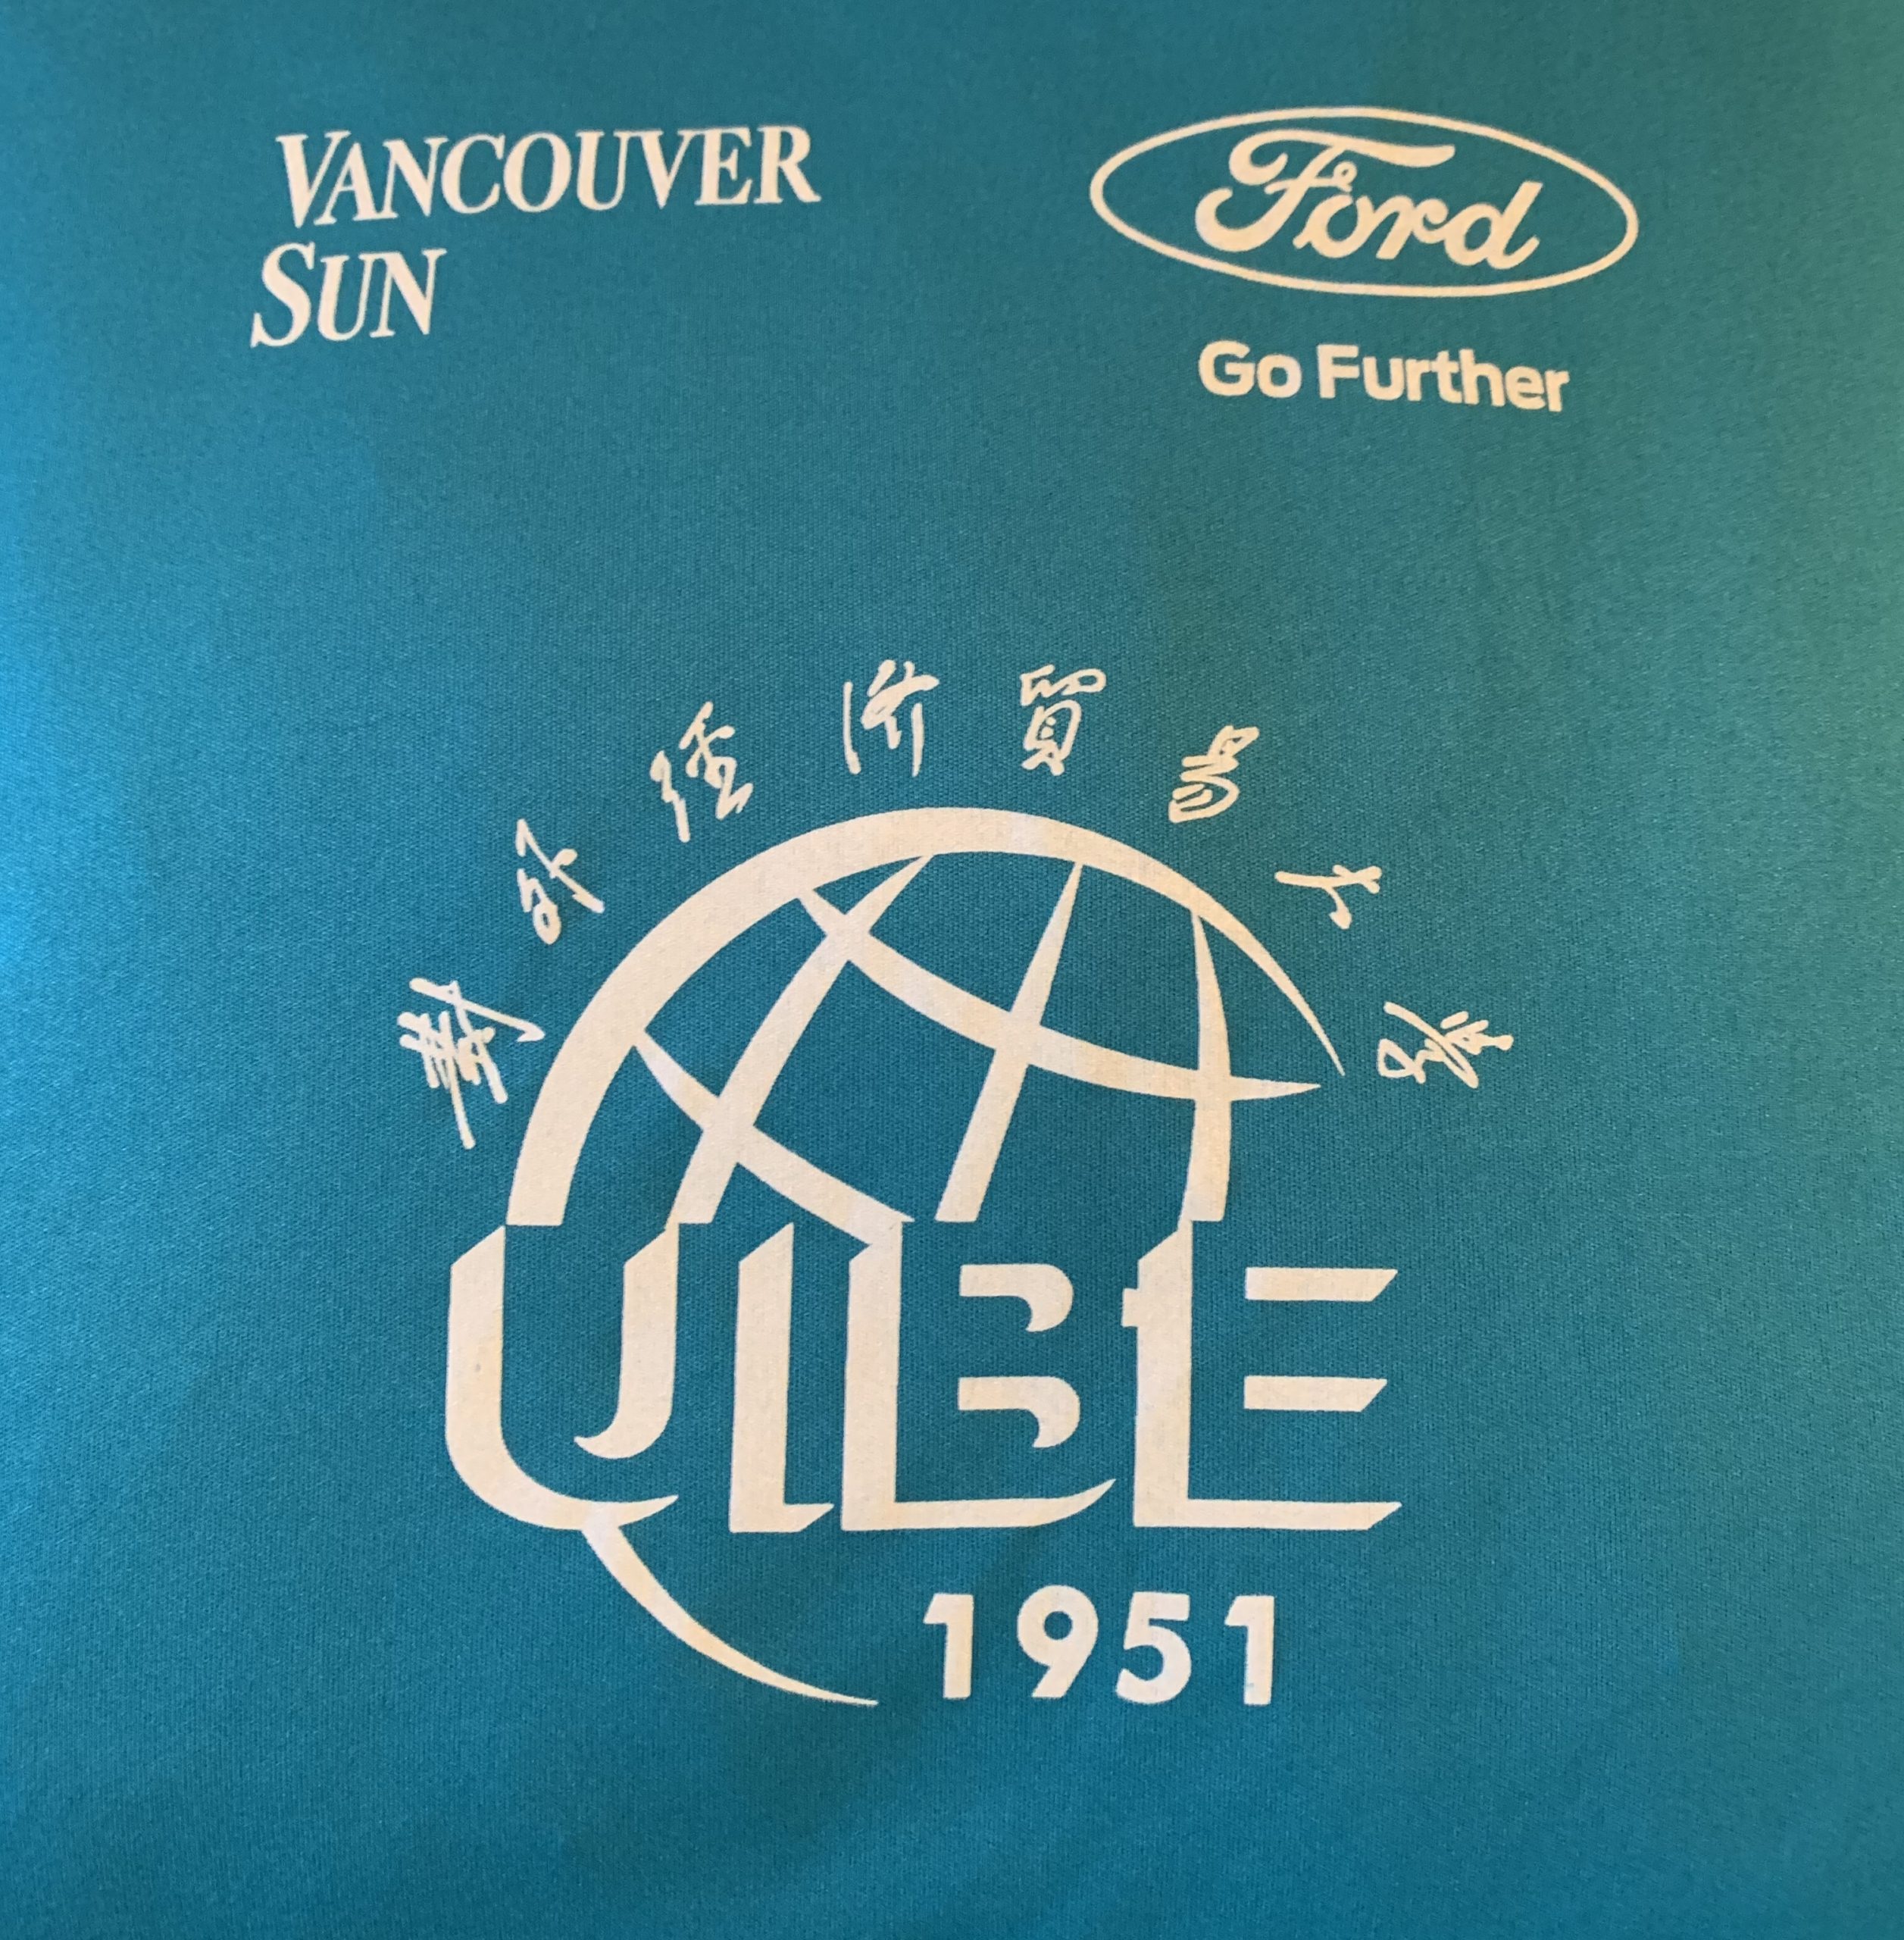 When UIBE meets Vancouver Sun Run